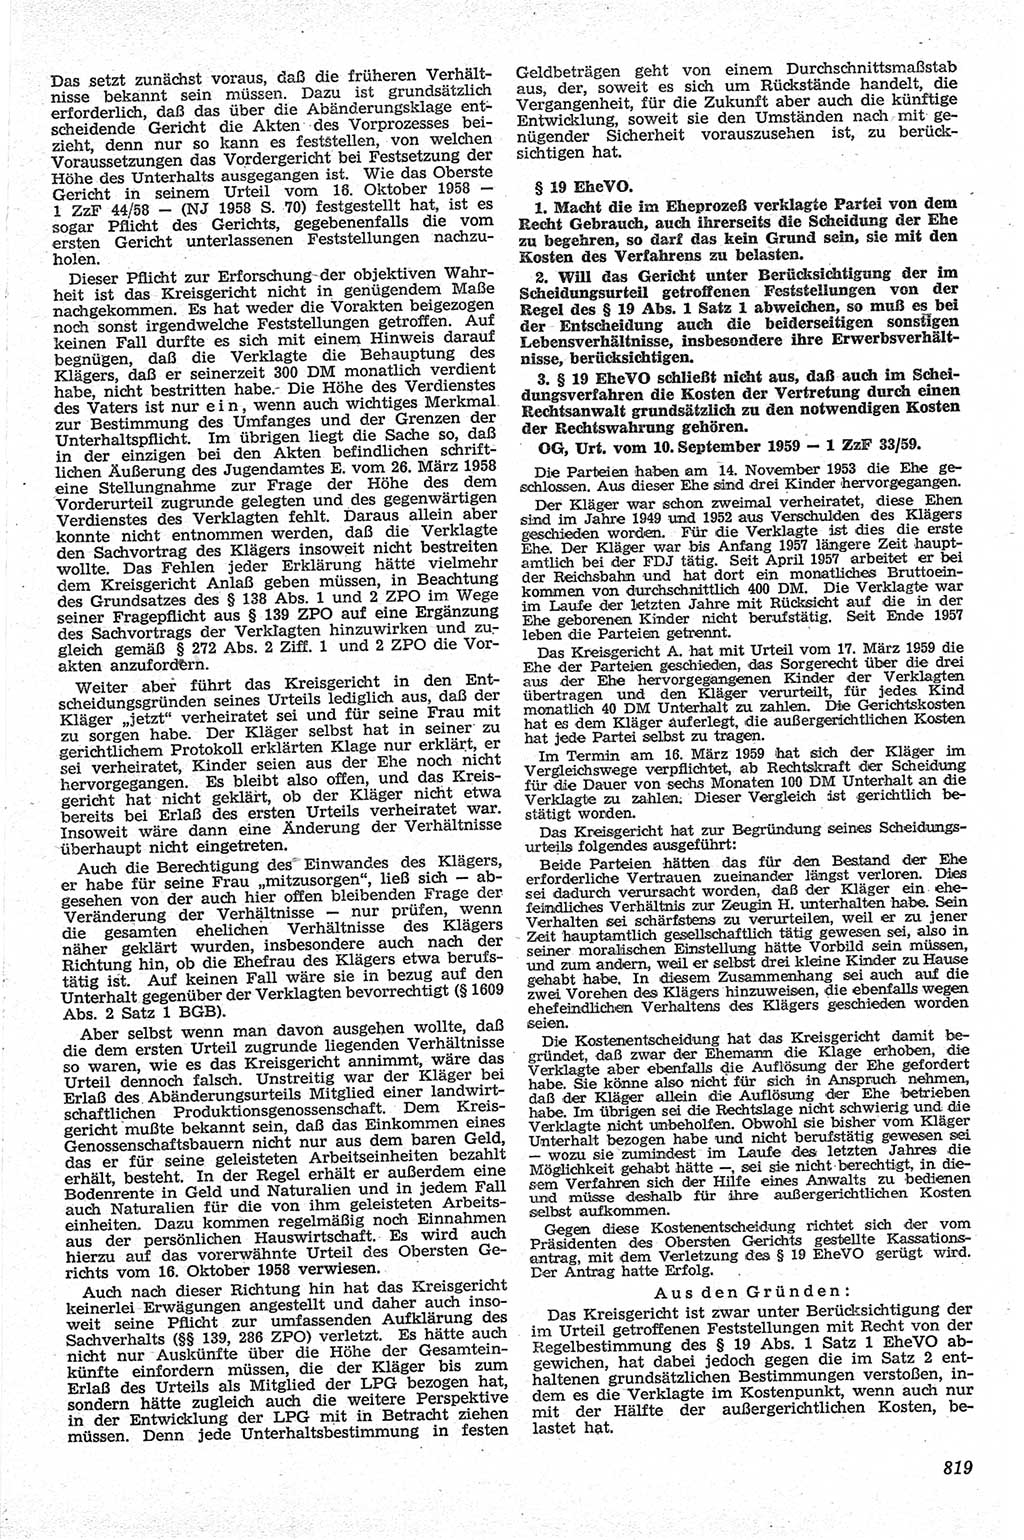 Neue Justiz (NJ), Zeitschrift für Recht und Rechtswissenschaft [Deutsche Demokratische Republik (DDR)], 13. Jahrgang 1959, Seite 819 (NJ DDR 1959, S. 819)